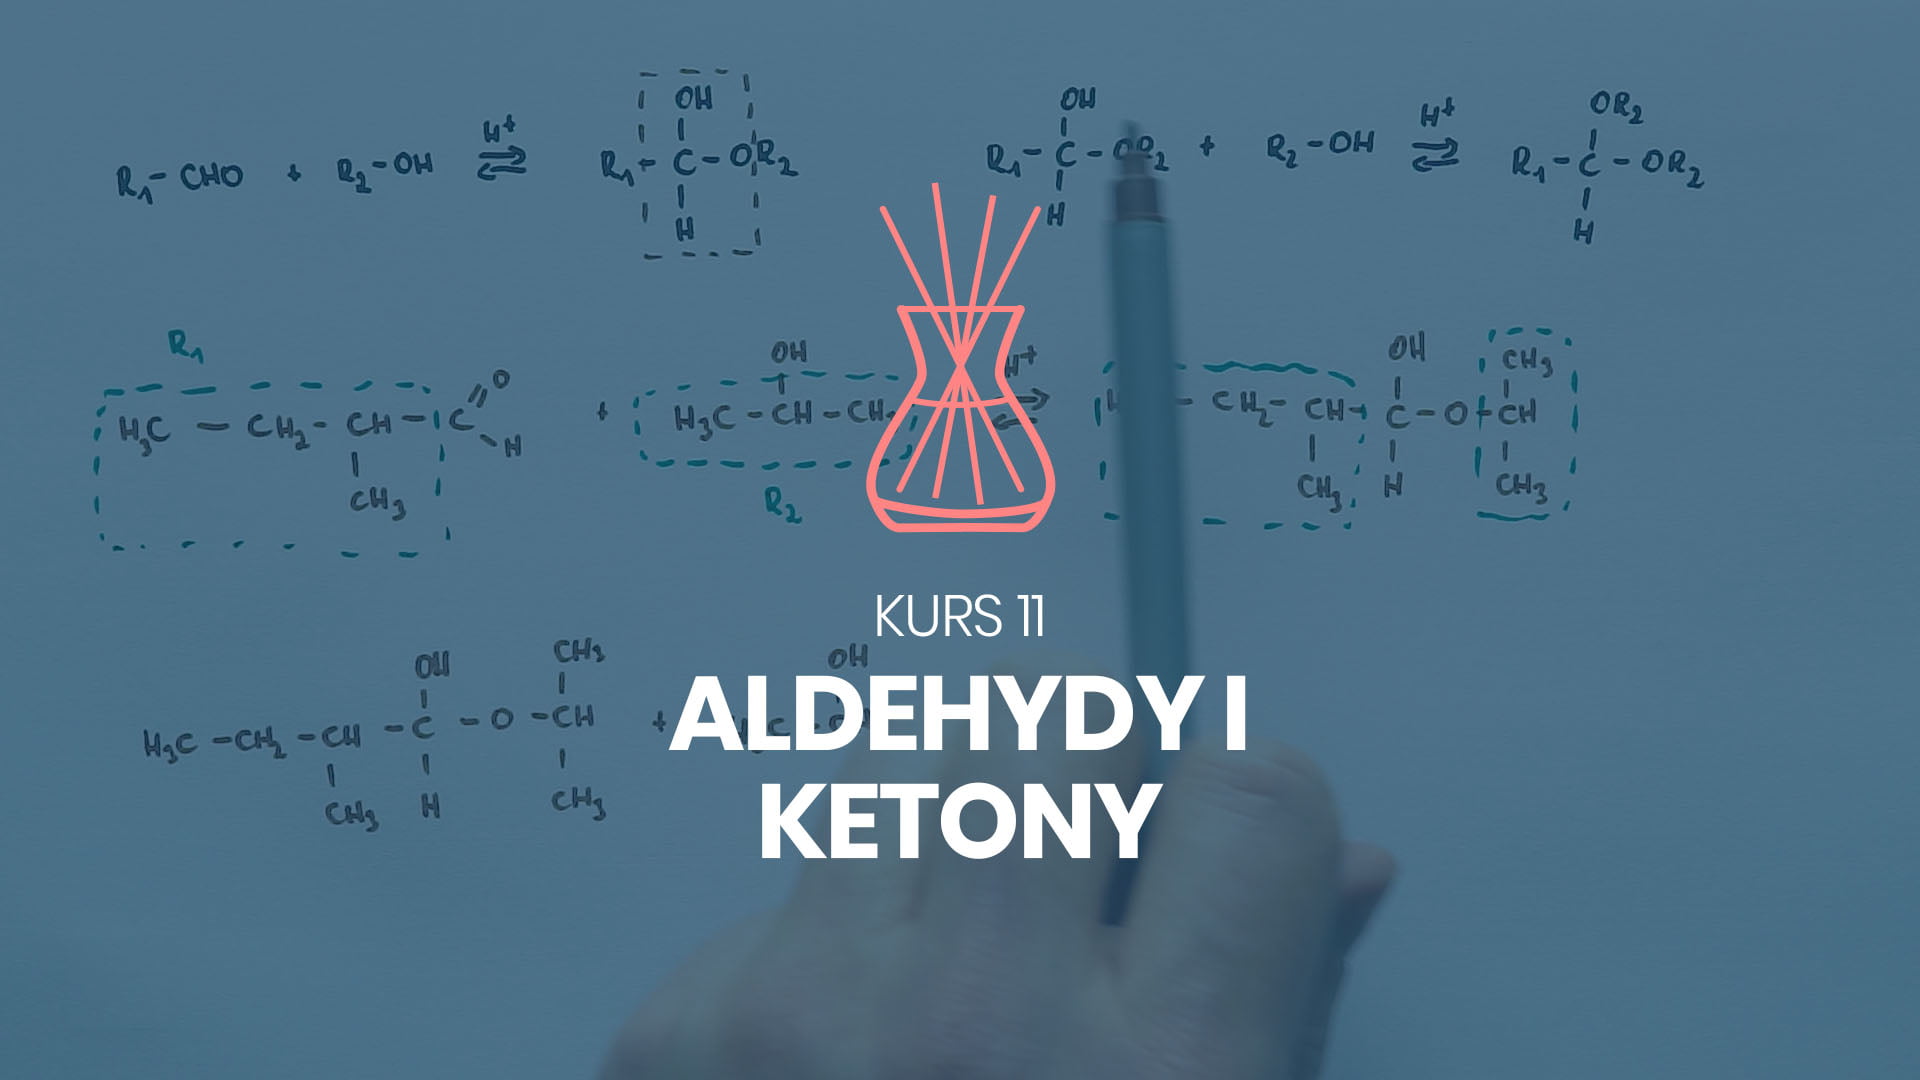 kurs 11 aldehydy i ketony chemia na 100%